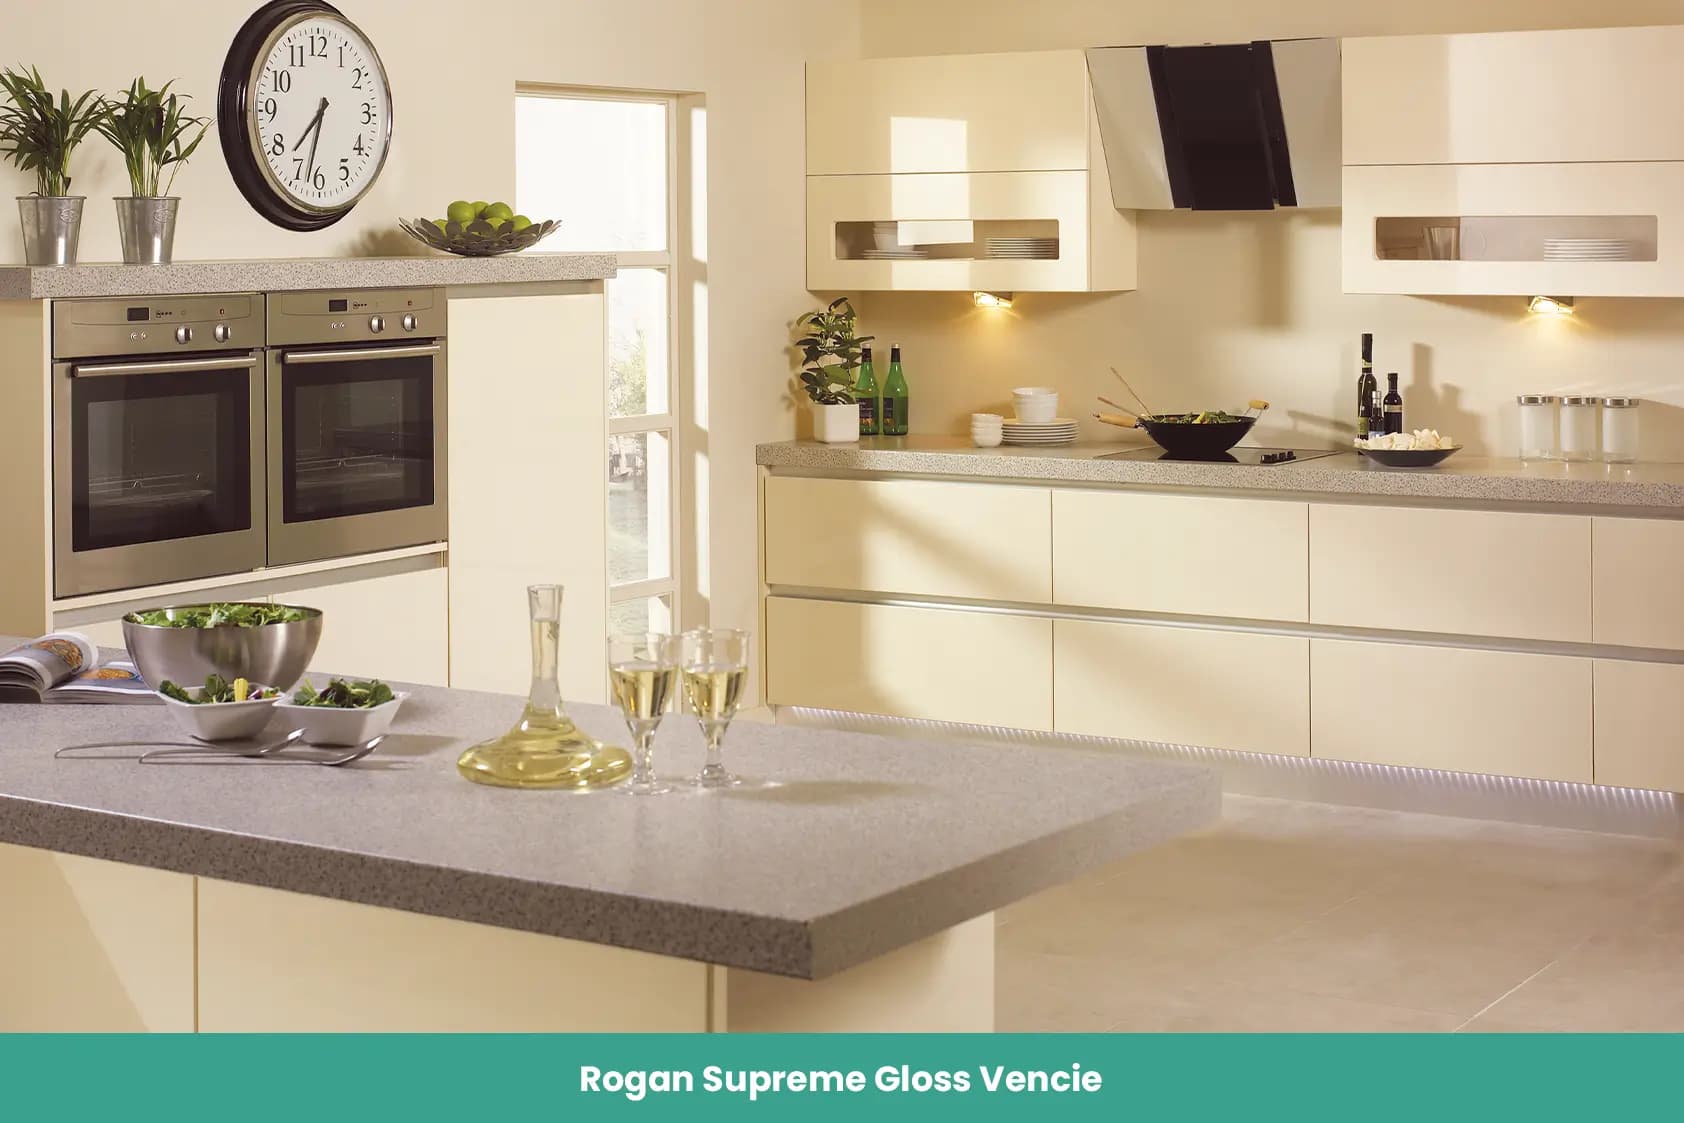 Rogan Supreme Gloss Vencie Kitchen